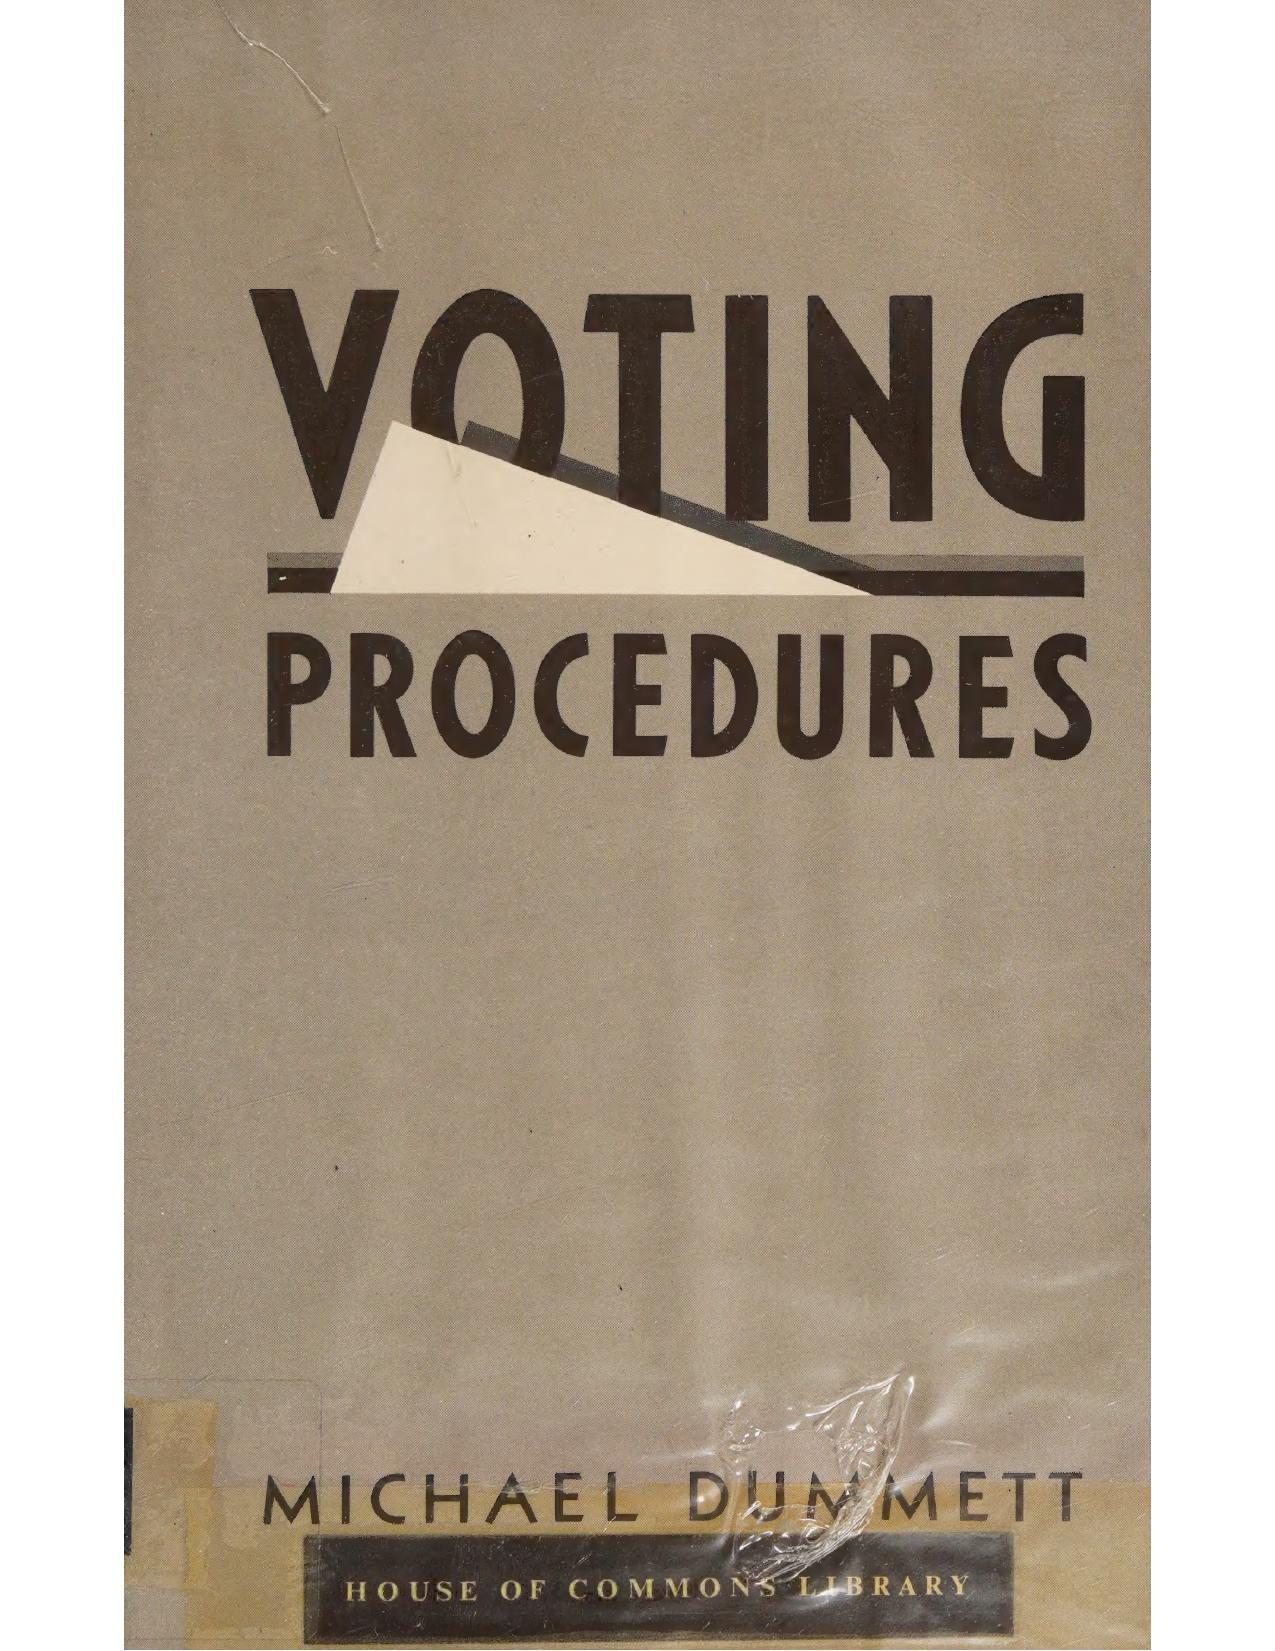 Voting Procedures by Michael Dummett